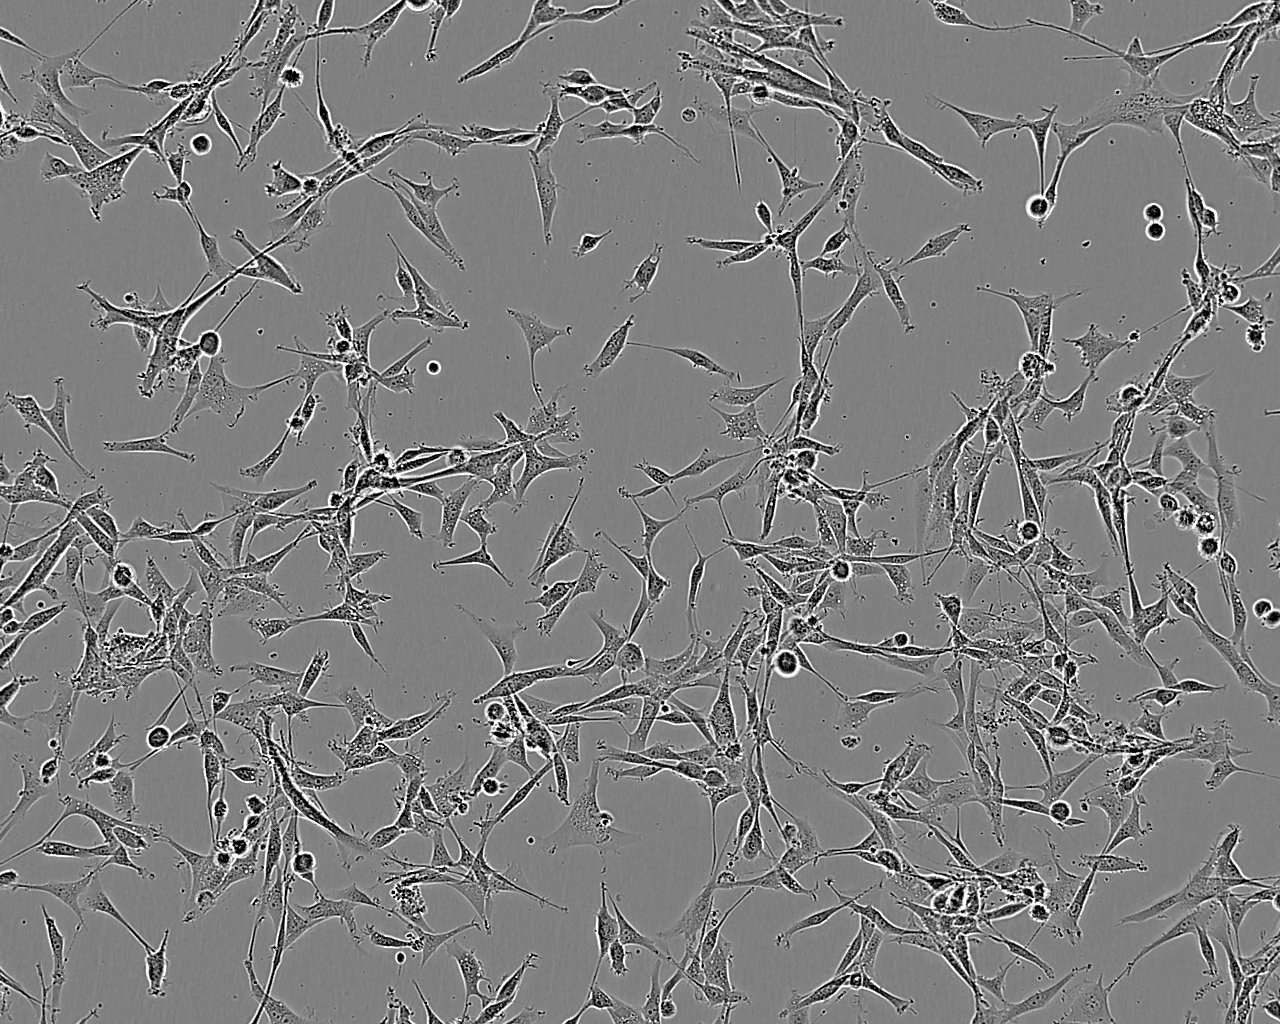 SNU-216 Cells|人胃癌细胞系